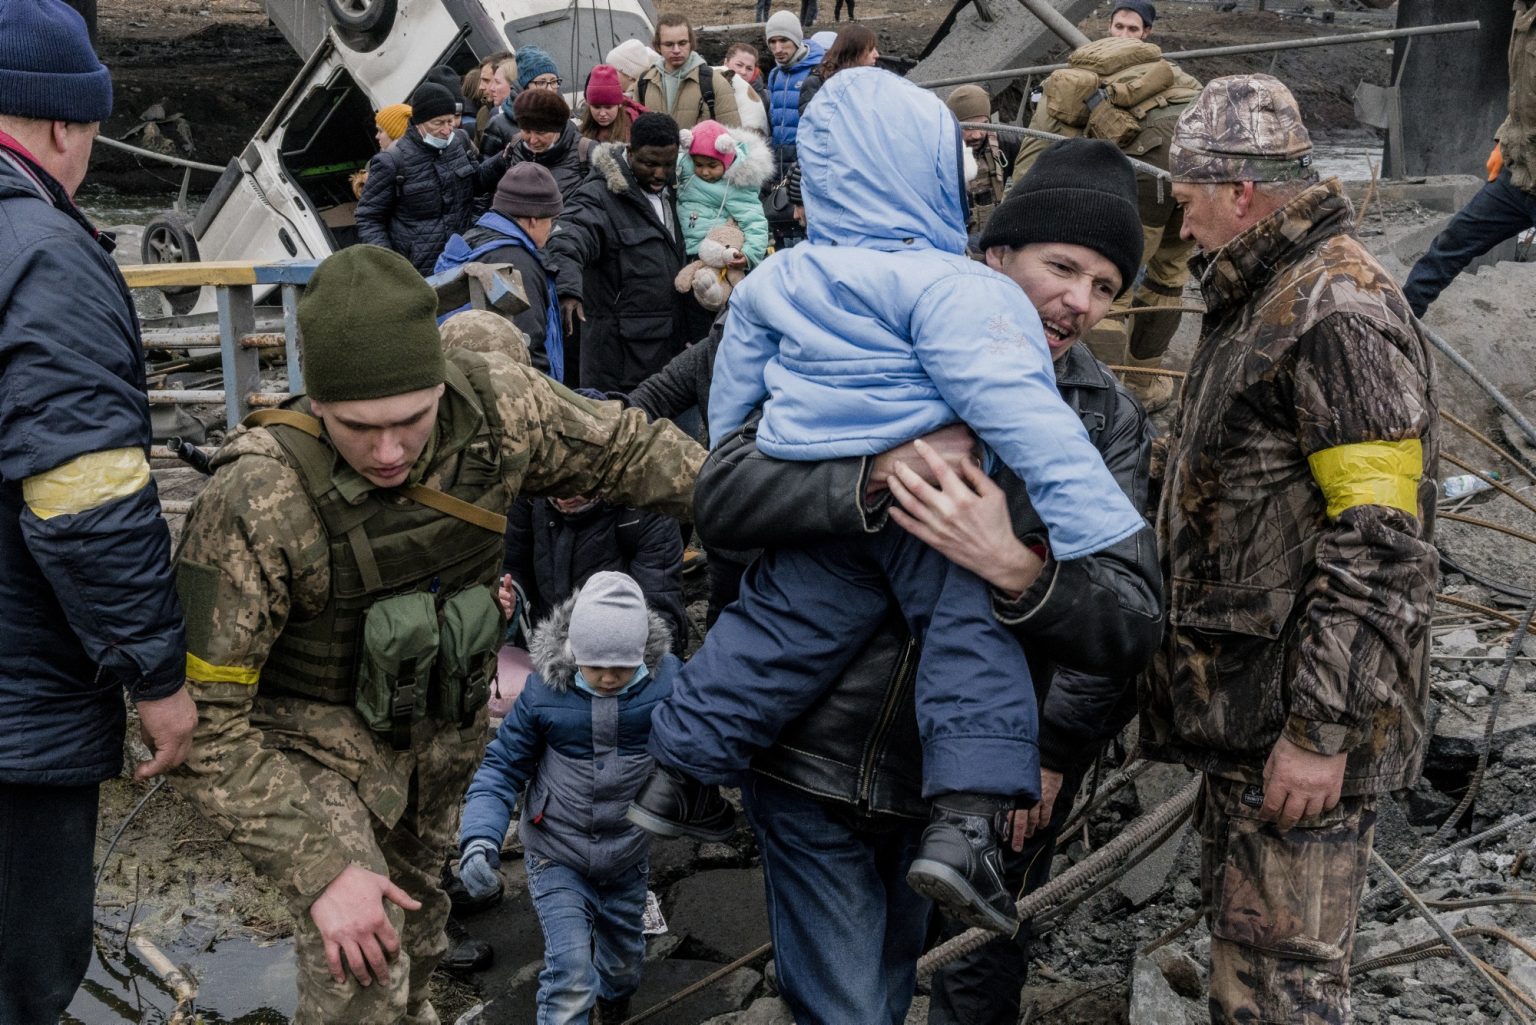 01559182 01557211 UKRAINE, Kyiv. March 05, 2022 - People cross a destroyed bridge as they try to leave the city of Irpin, in the Kyiv region.           As Russia invades Ukraine, thousands of Ukrainians are fleeing the country to find shelter in bordering countries. 
---------
Con l'invasione russa ai danni dell'Ucraina, migliaia di ucraini sono in fuga dalla nazione d'origine per cercare rifugio nelle nazioni confinanti.*** SPECIAL   FEE   APPLIES ****** SPECIAL   FEE   APPLIES *** *** Local Caption *** 01559182